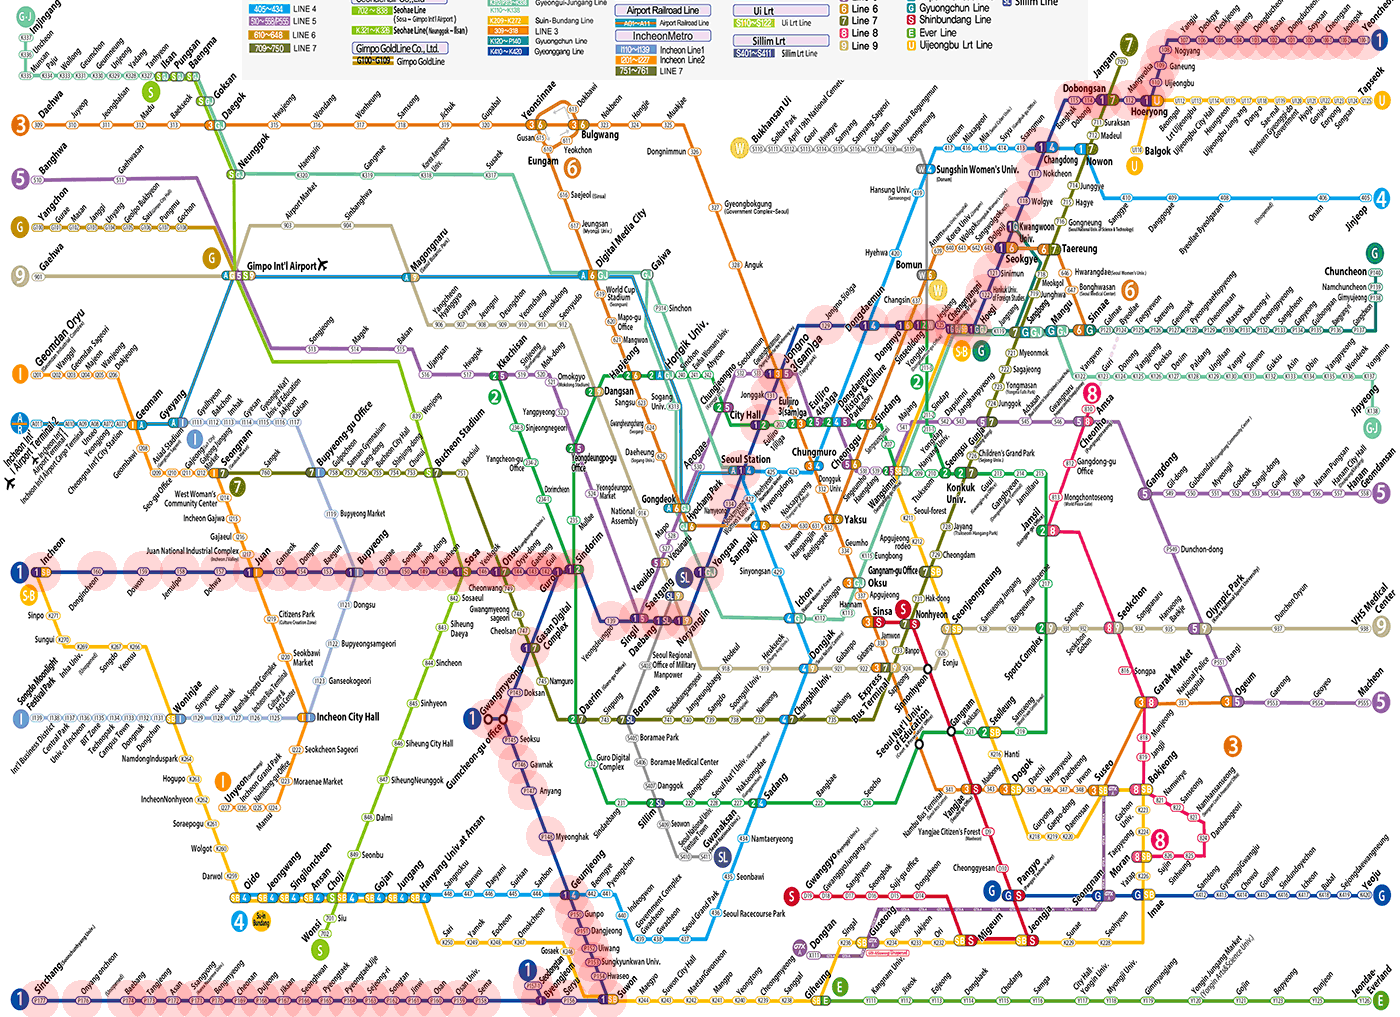 Seoul subway Line 1 map